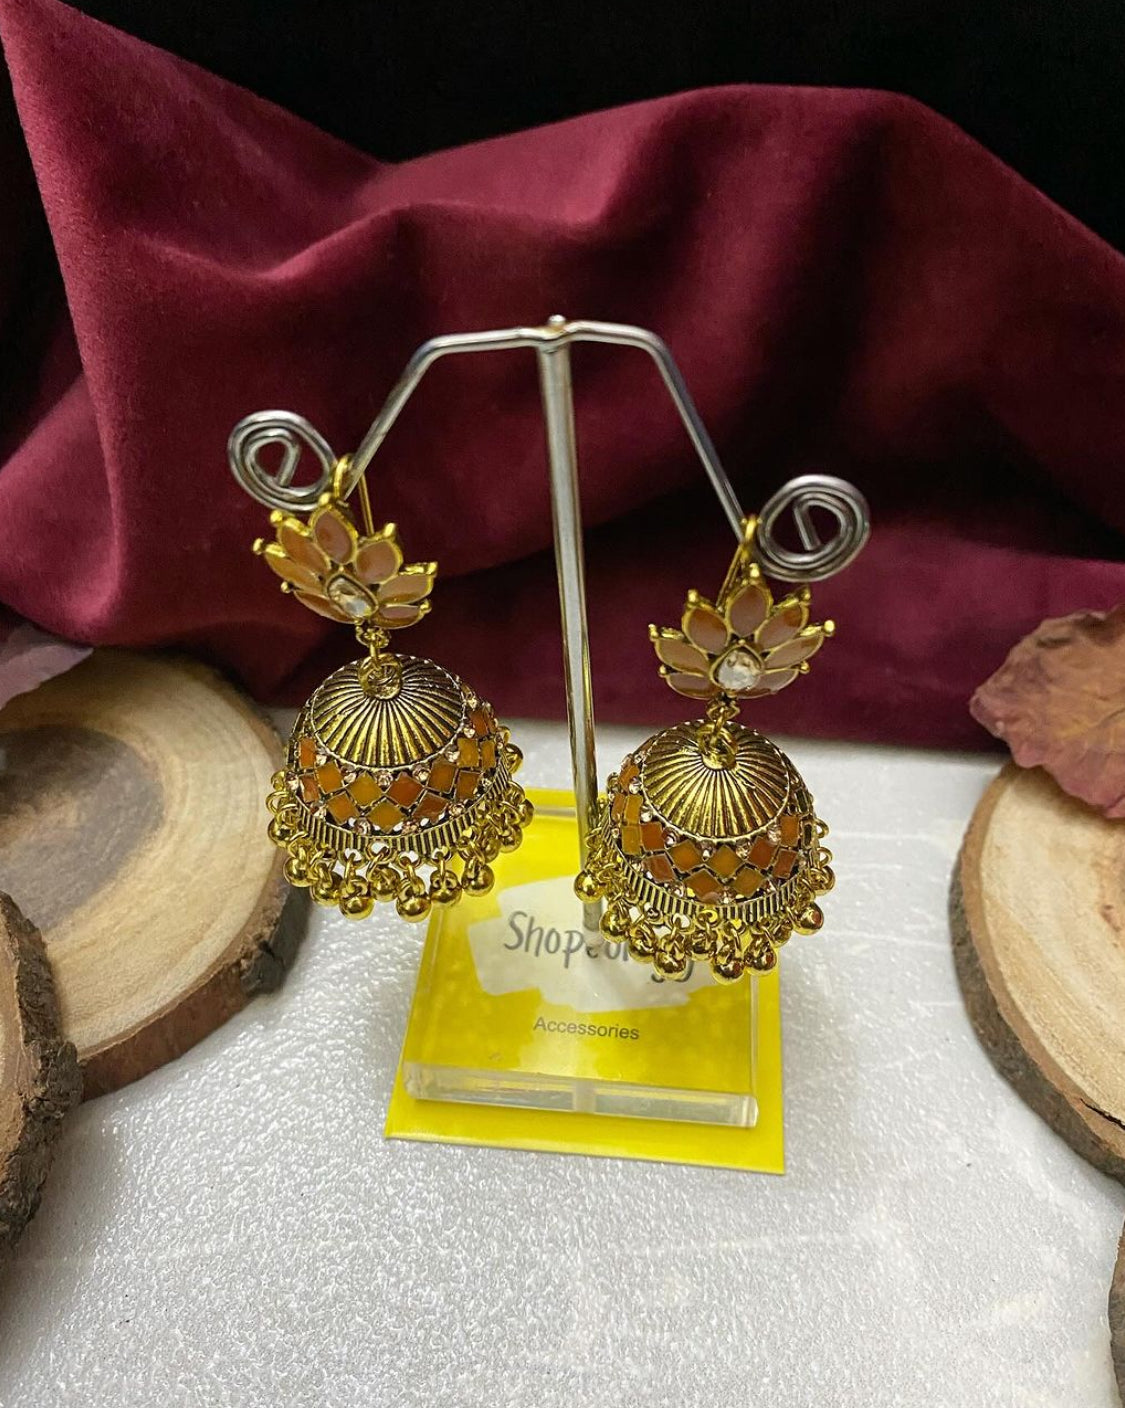 Petal jhumka earring - Shopeology